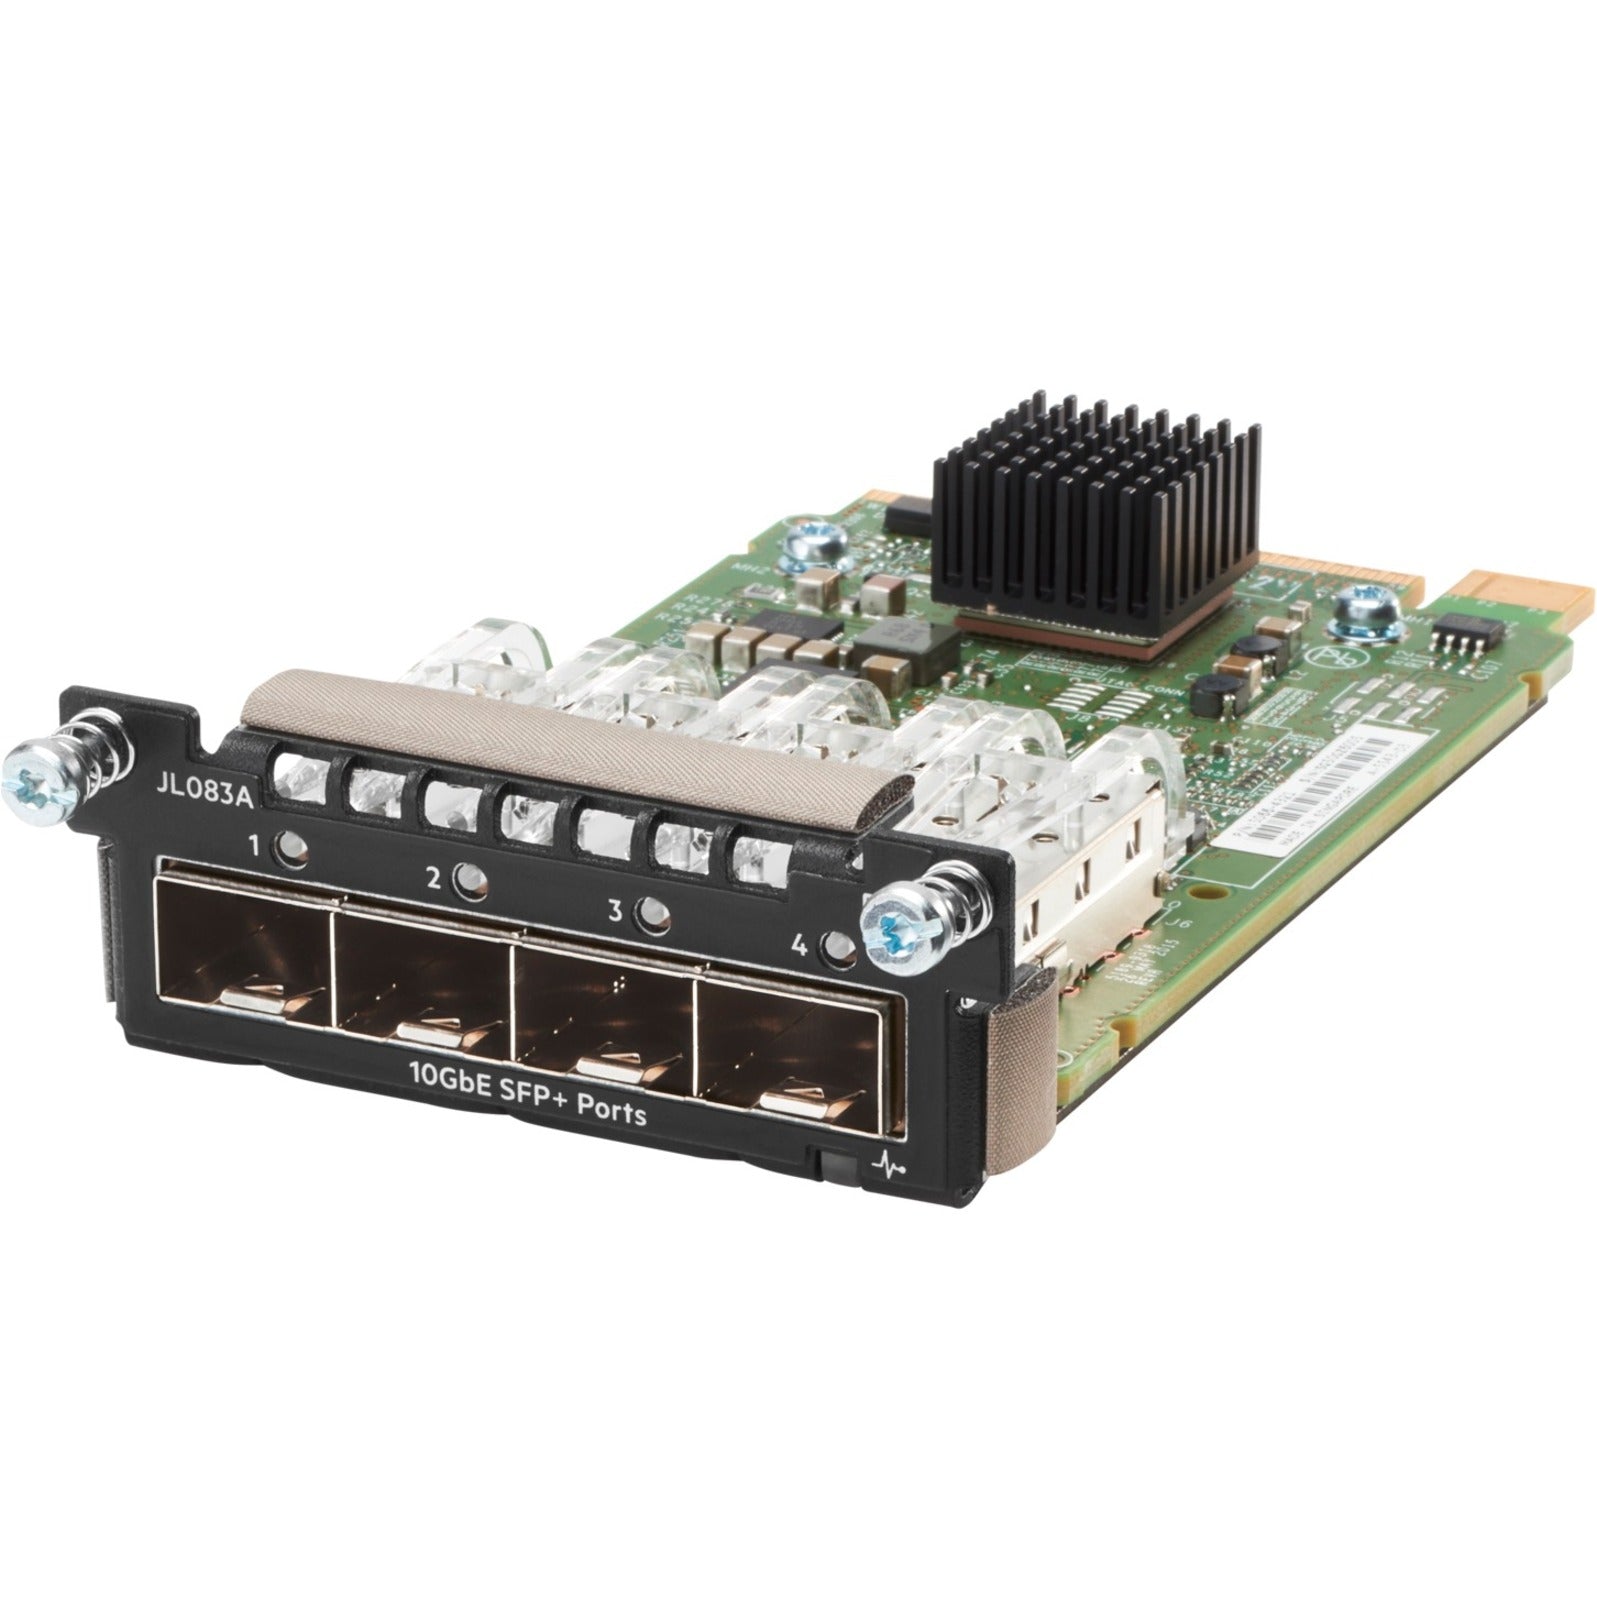 HPE JL083A Aruba 3810M 4SFP+ Module, 10 Gigabit Ethernet, Optical Fiber Connectivity